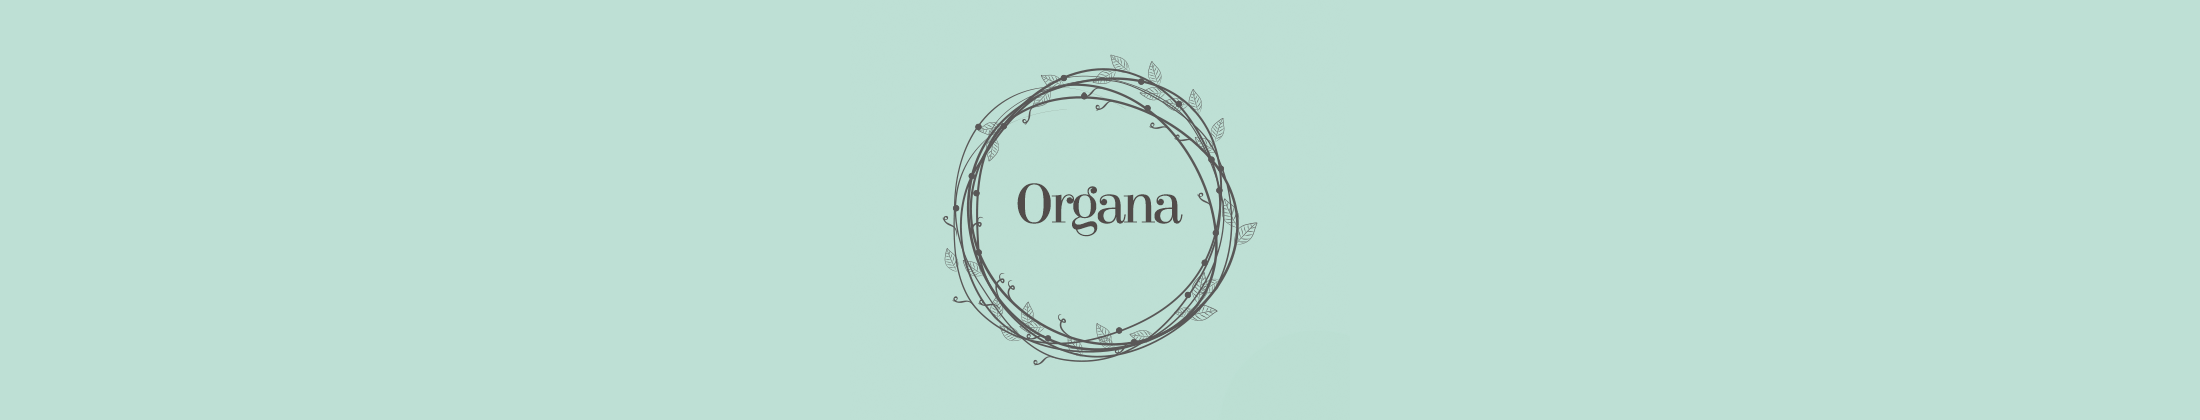 organa_header